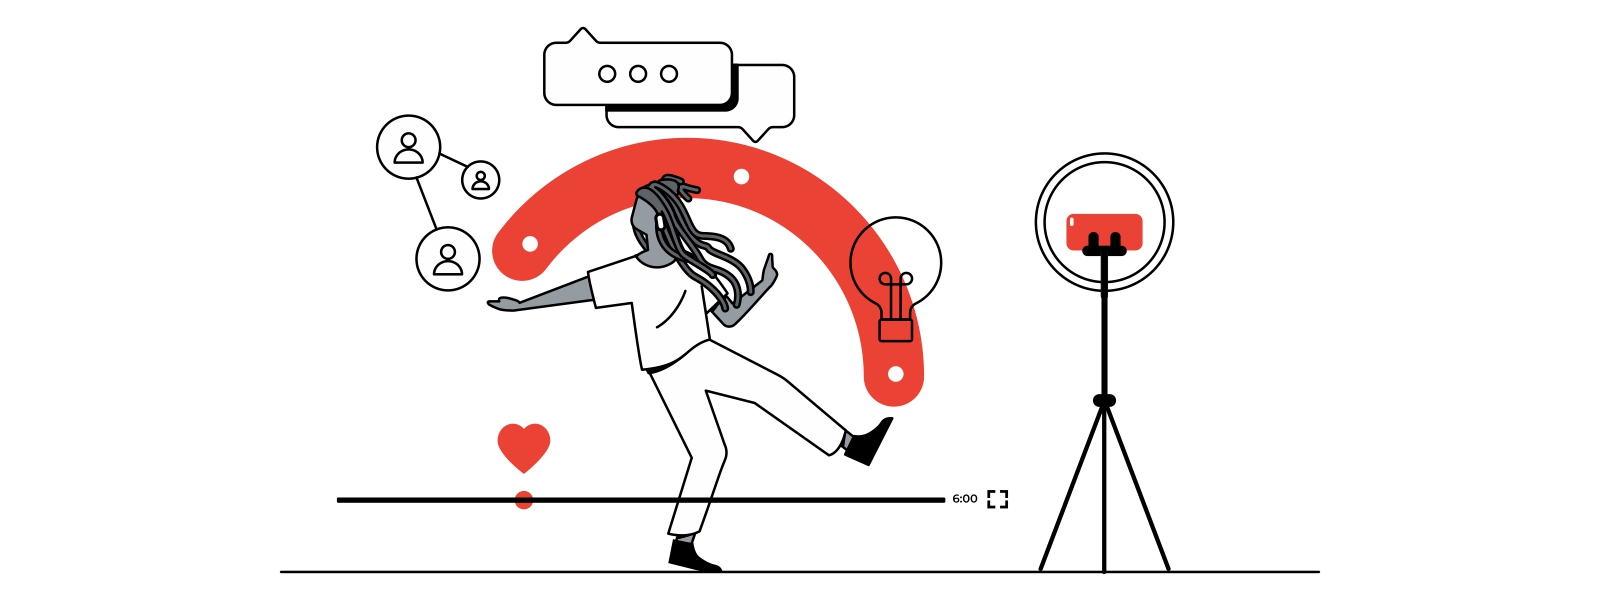 A cena ilustra os bastidores da criação de um vídeo. No centro, uma mulher negra de cabelos trançados se movimenta em frente à câmera do celular, que está em um tripé. Na imagem, há ícones representando conexão, interações e criatividade.